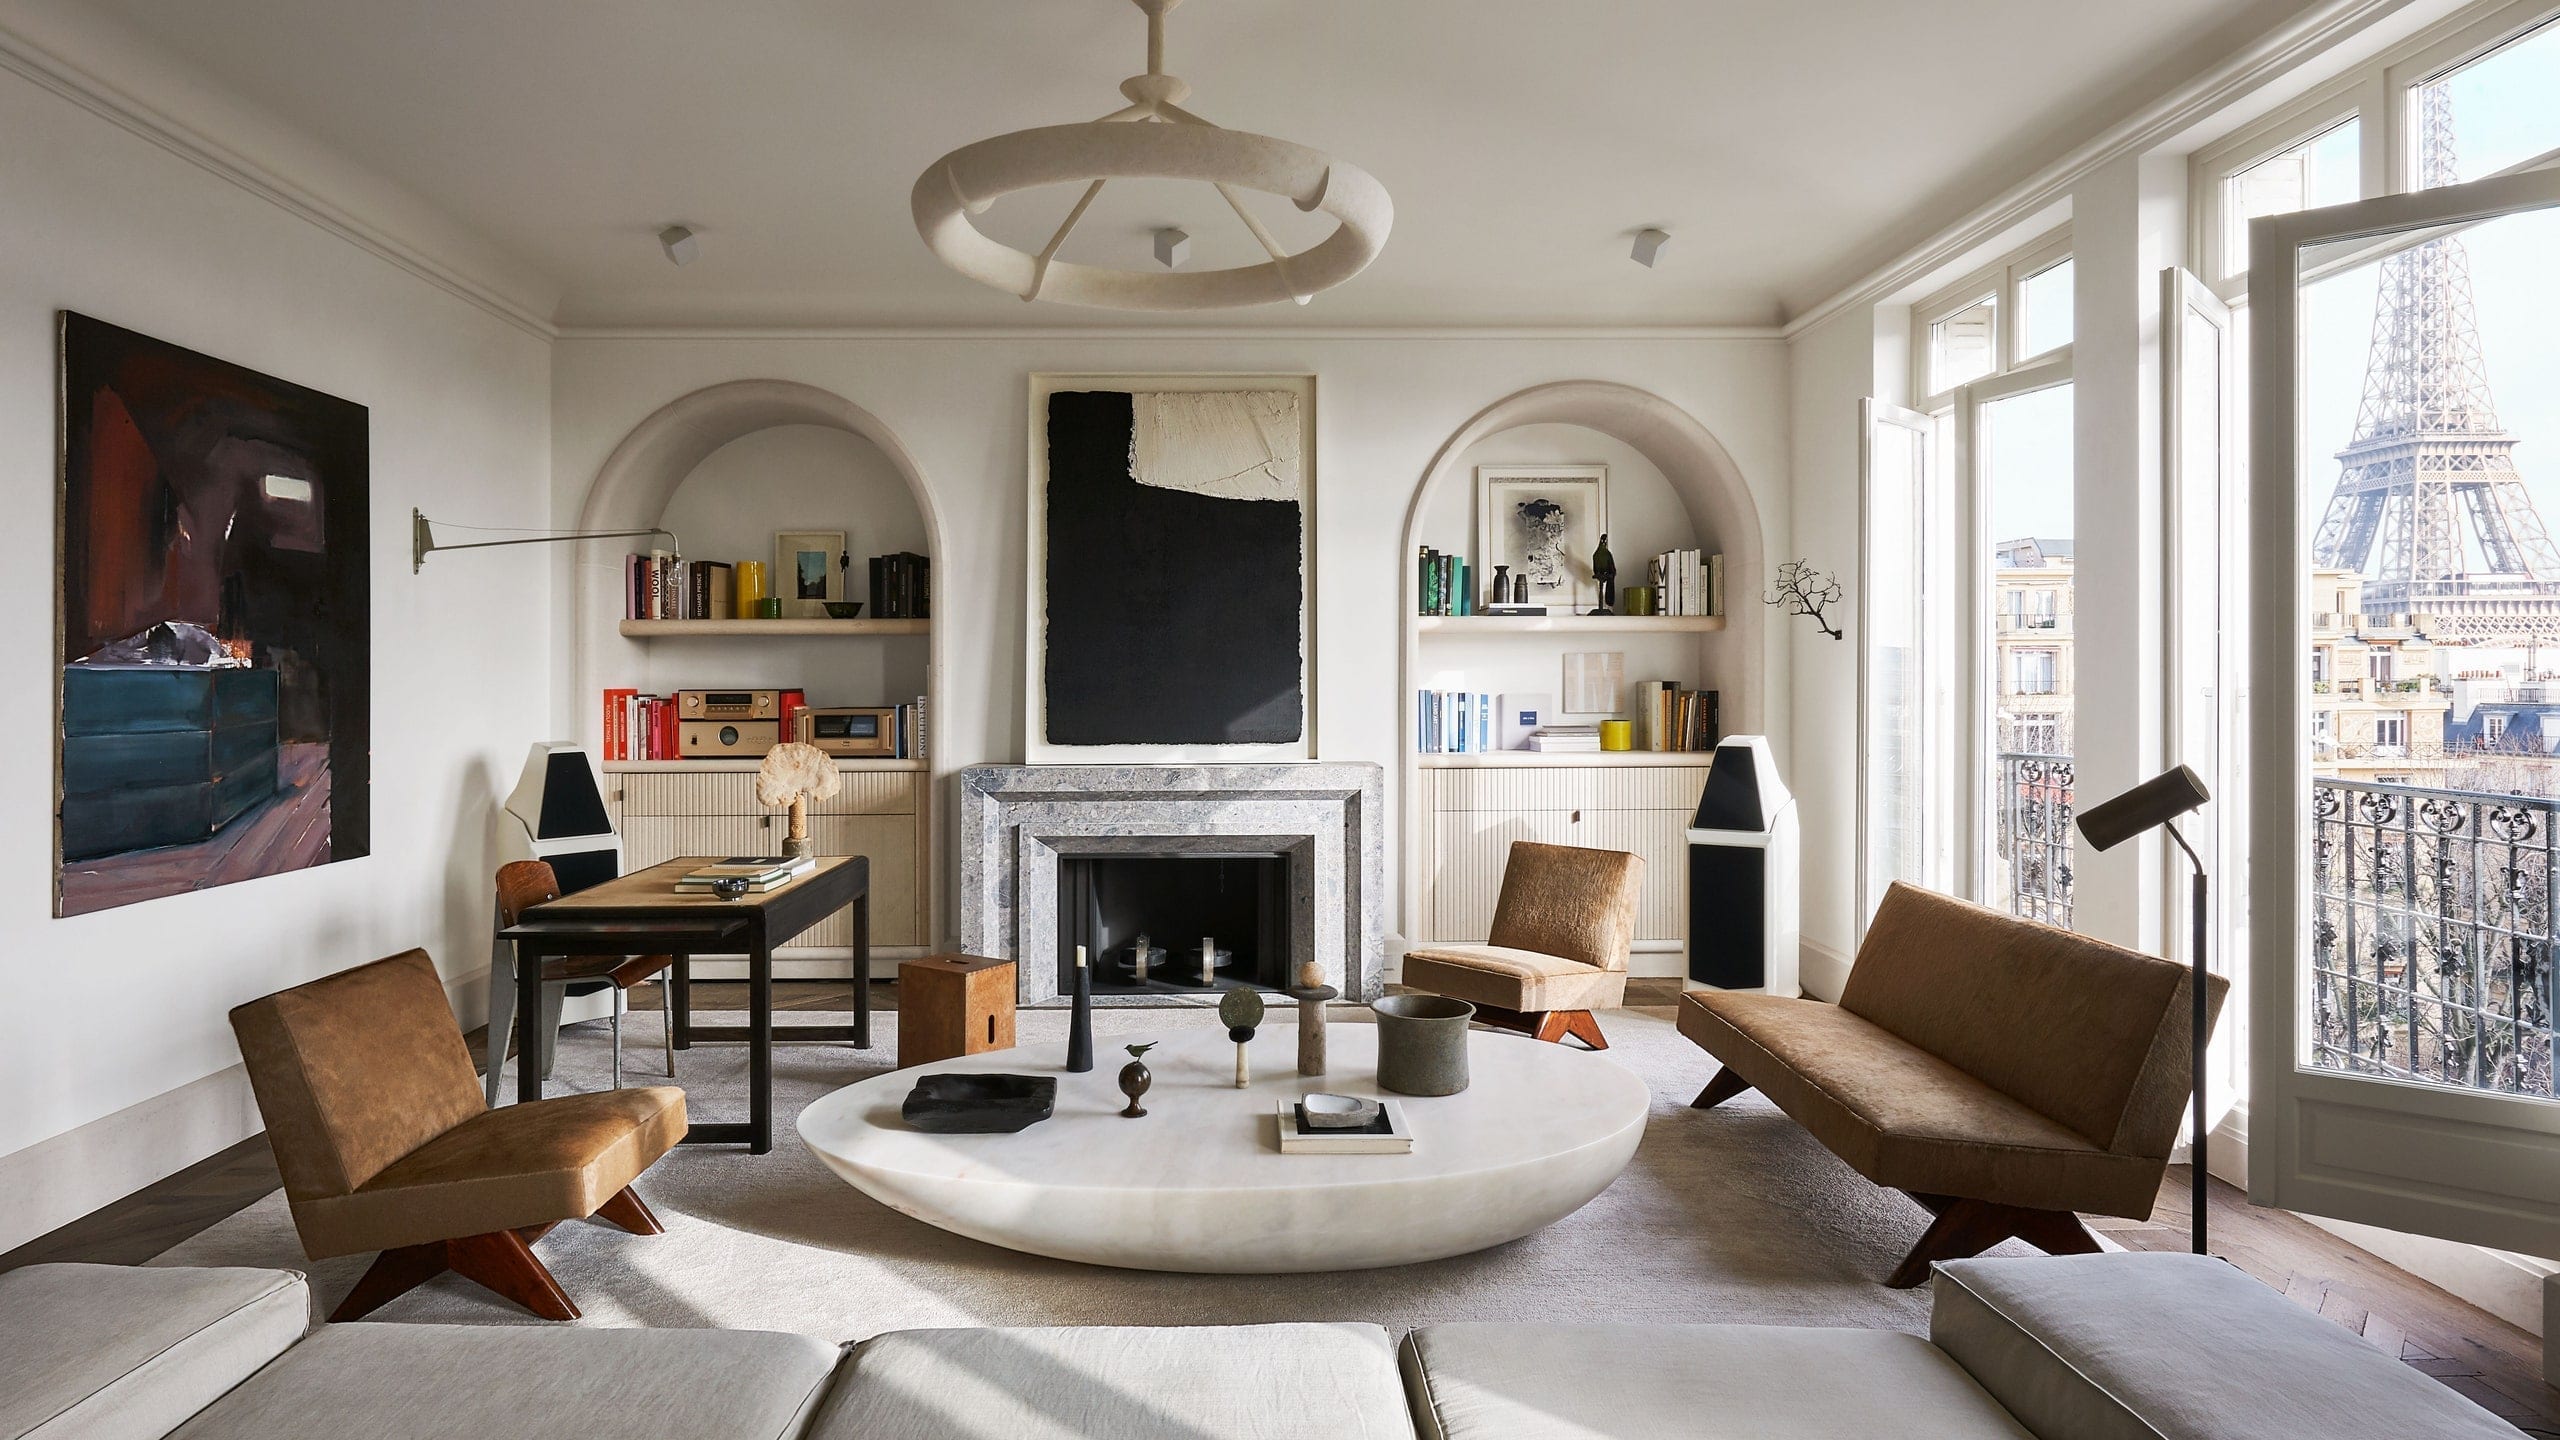 Joseph dirand - minimalist interior designer